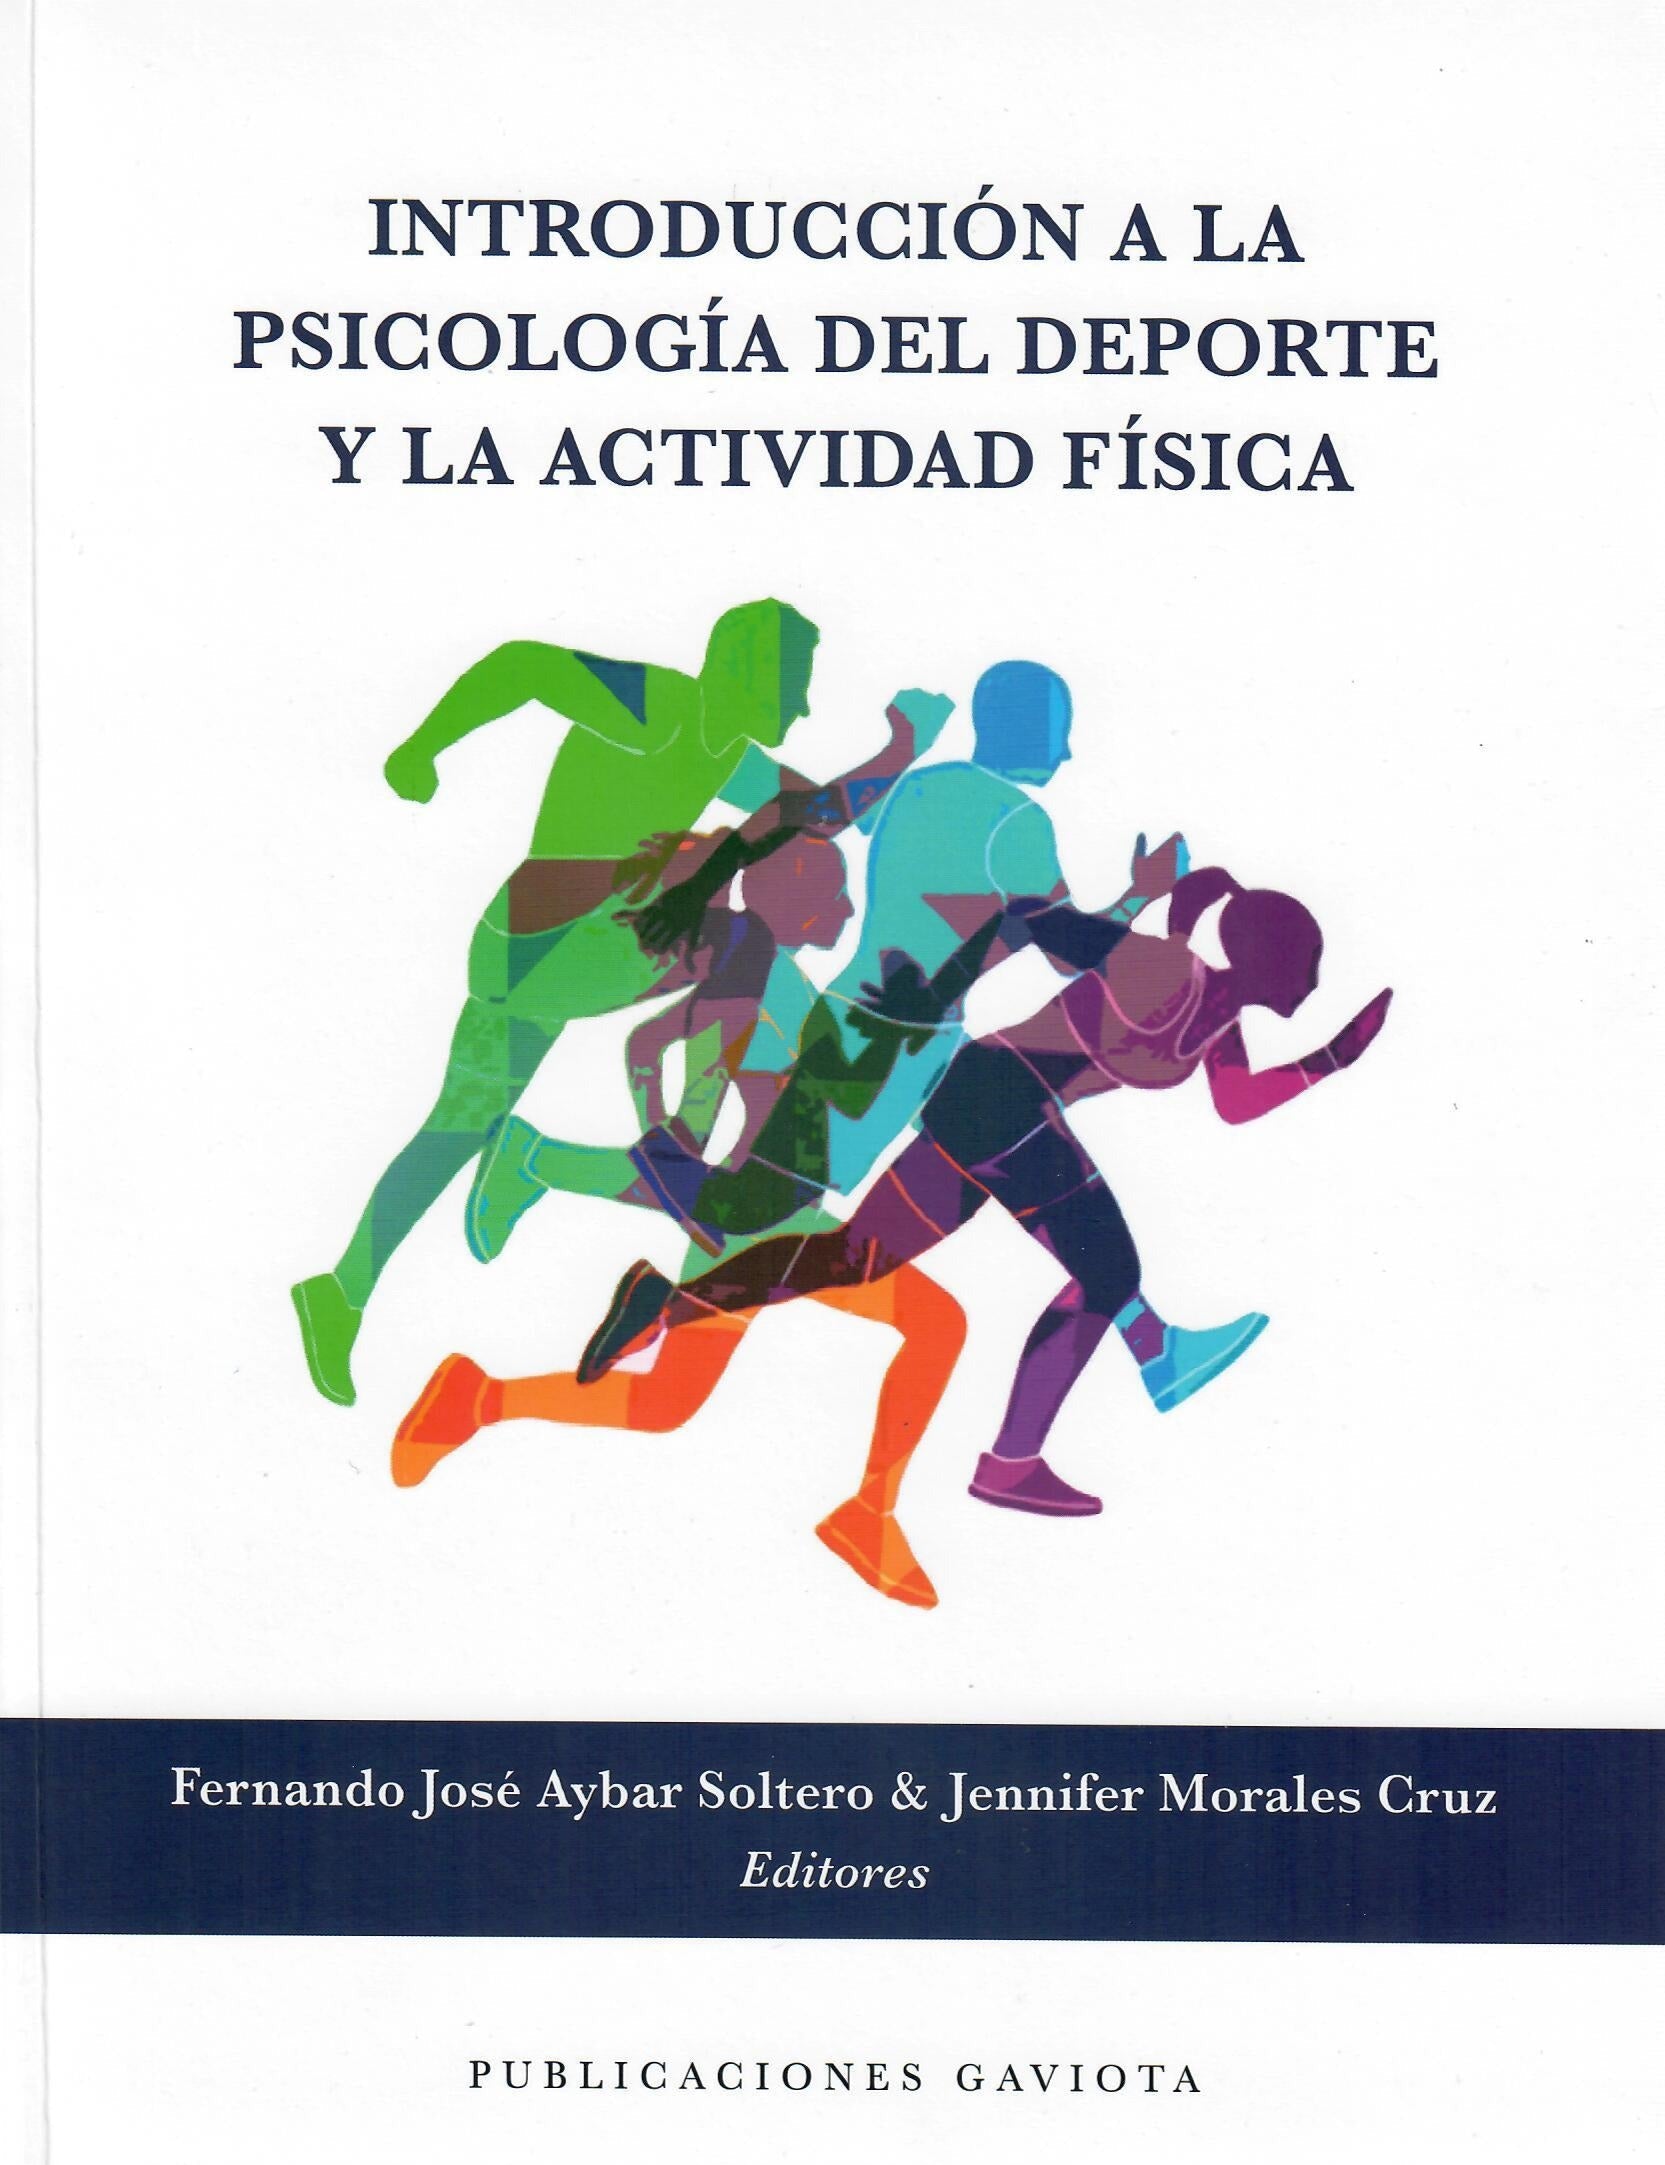 Enric Parnau - Psicología del deporte - Coeficiente intelectual